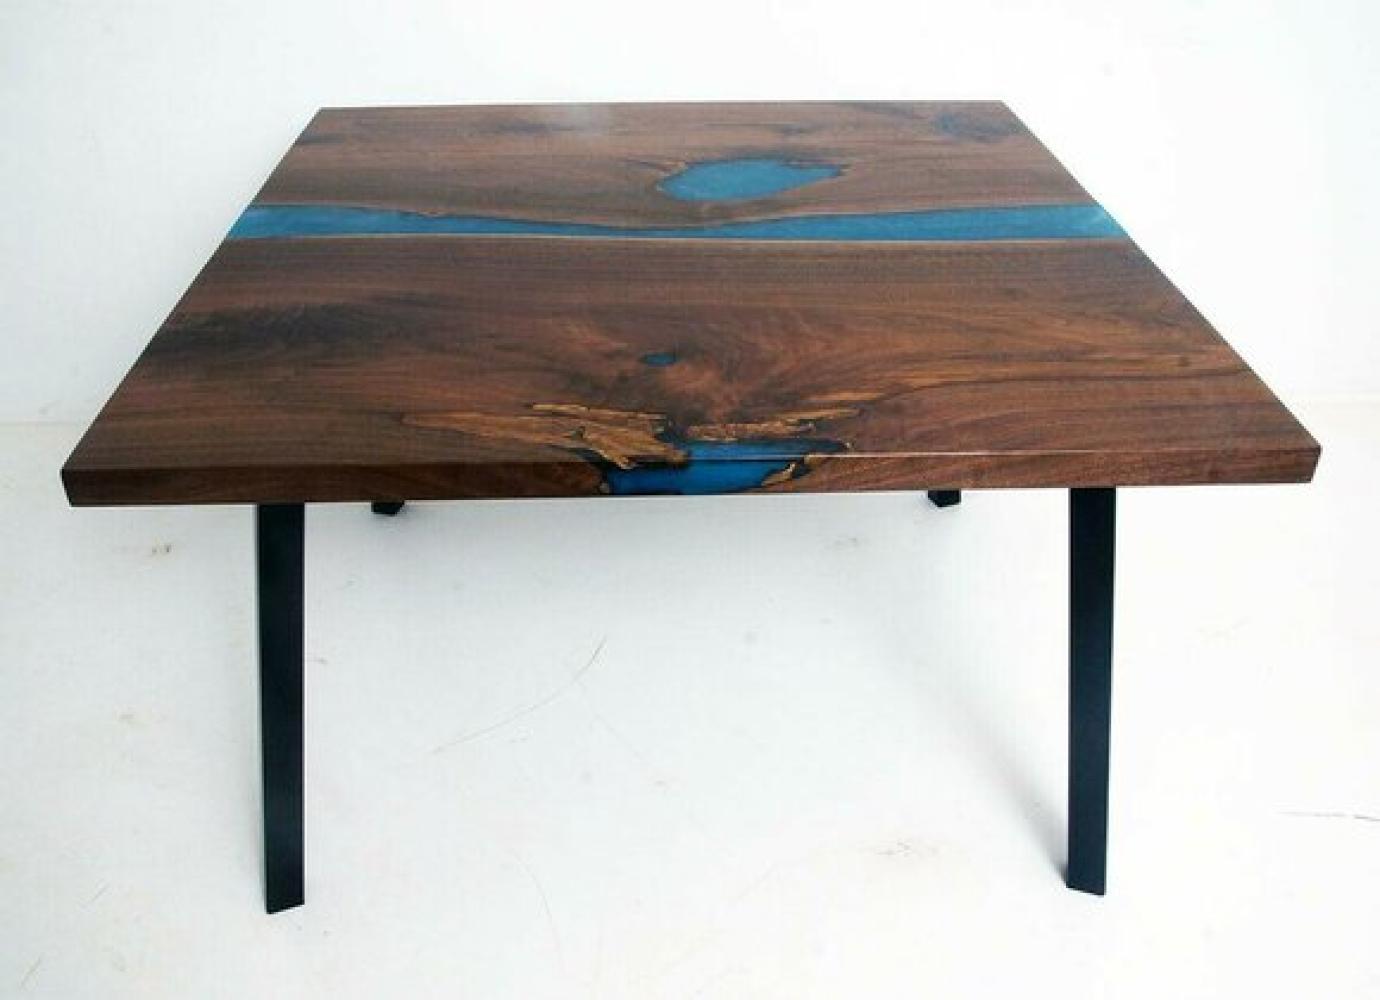 Couchtisch River Table Echtes Holz Flusstisch Massiv Dekorative Epoxidharz Bild 1